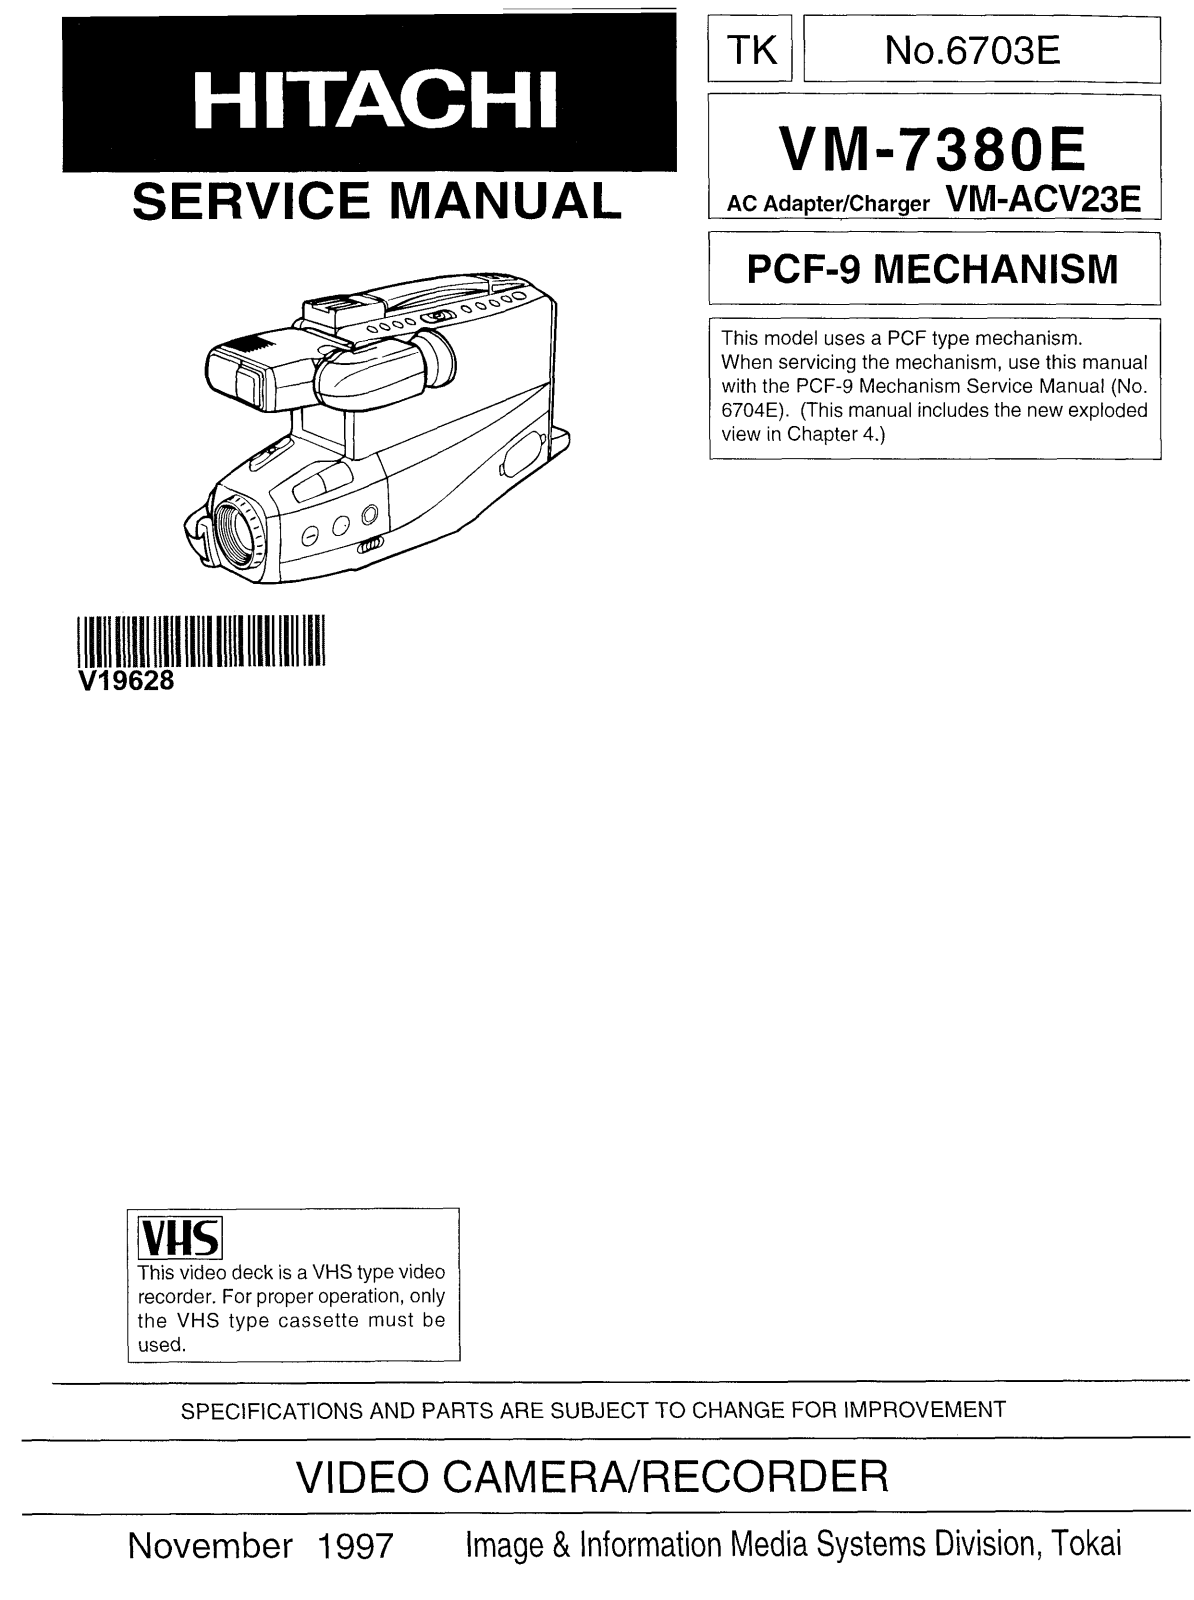 Hitachi VM-ACV23E, VM-7380E Service Manual